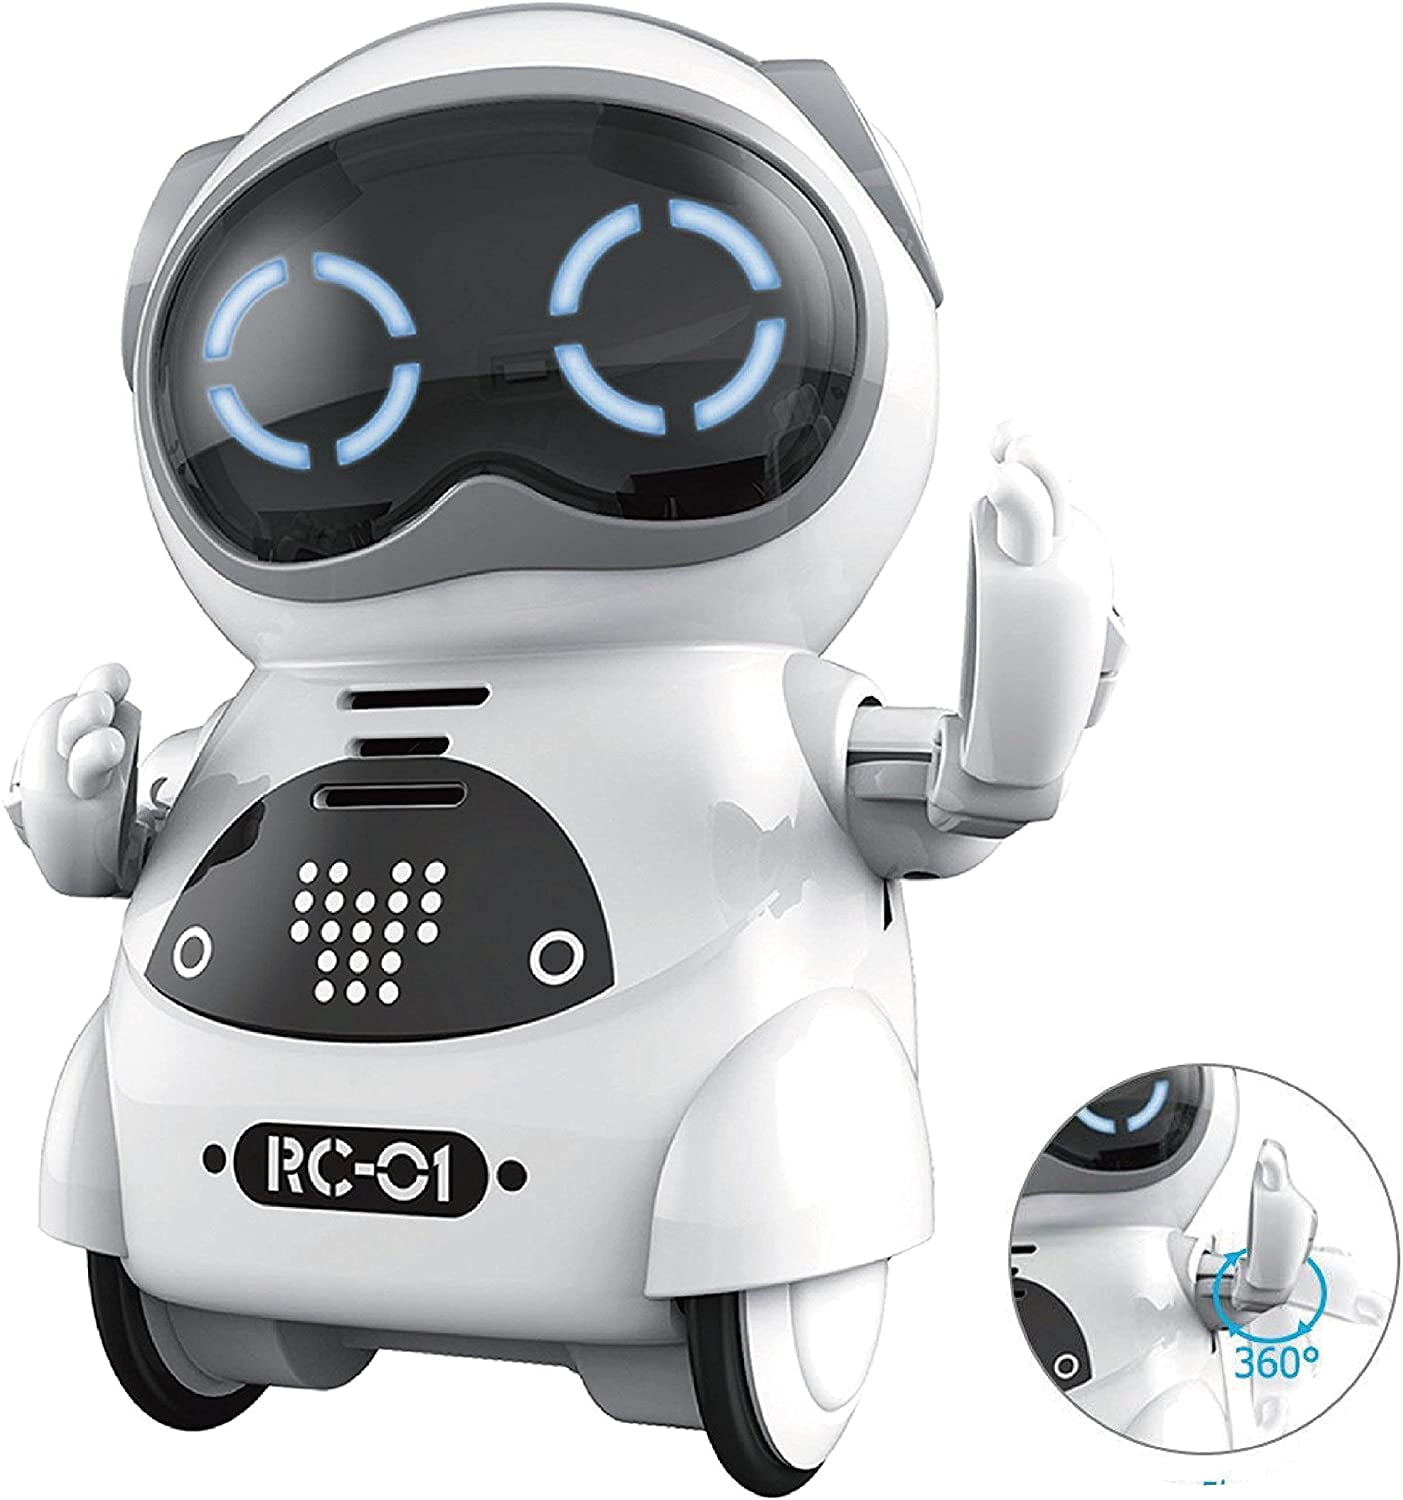 Умная игрушка купить. Карманный интерактивный робот Jiabaile (русский язык) - Jia-939a. Интерактивный робот - Jia-958. Робот интерактивная игрушка Robo. Карманный робот 939а.